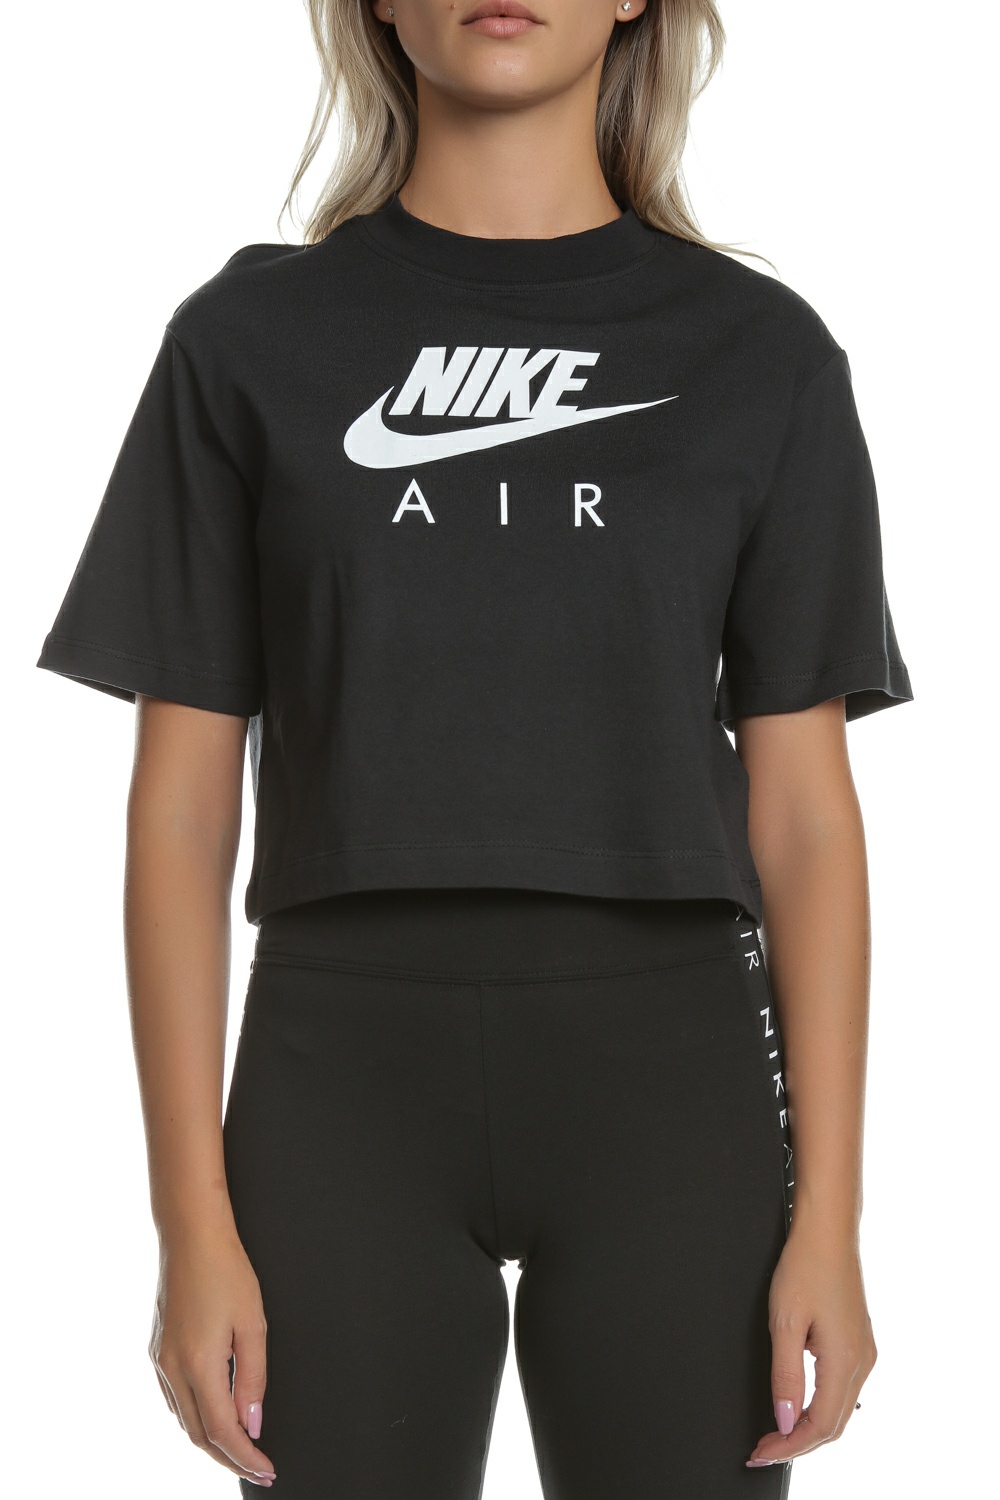 Γυναικεία/Ρούχα/Αθλητικά/T-shirt-Τοπ NIKE - Γυναικείο cropped t-shirt NIKE NSW AIR TOP SS μαύρο